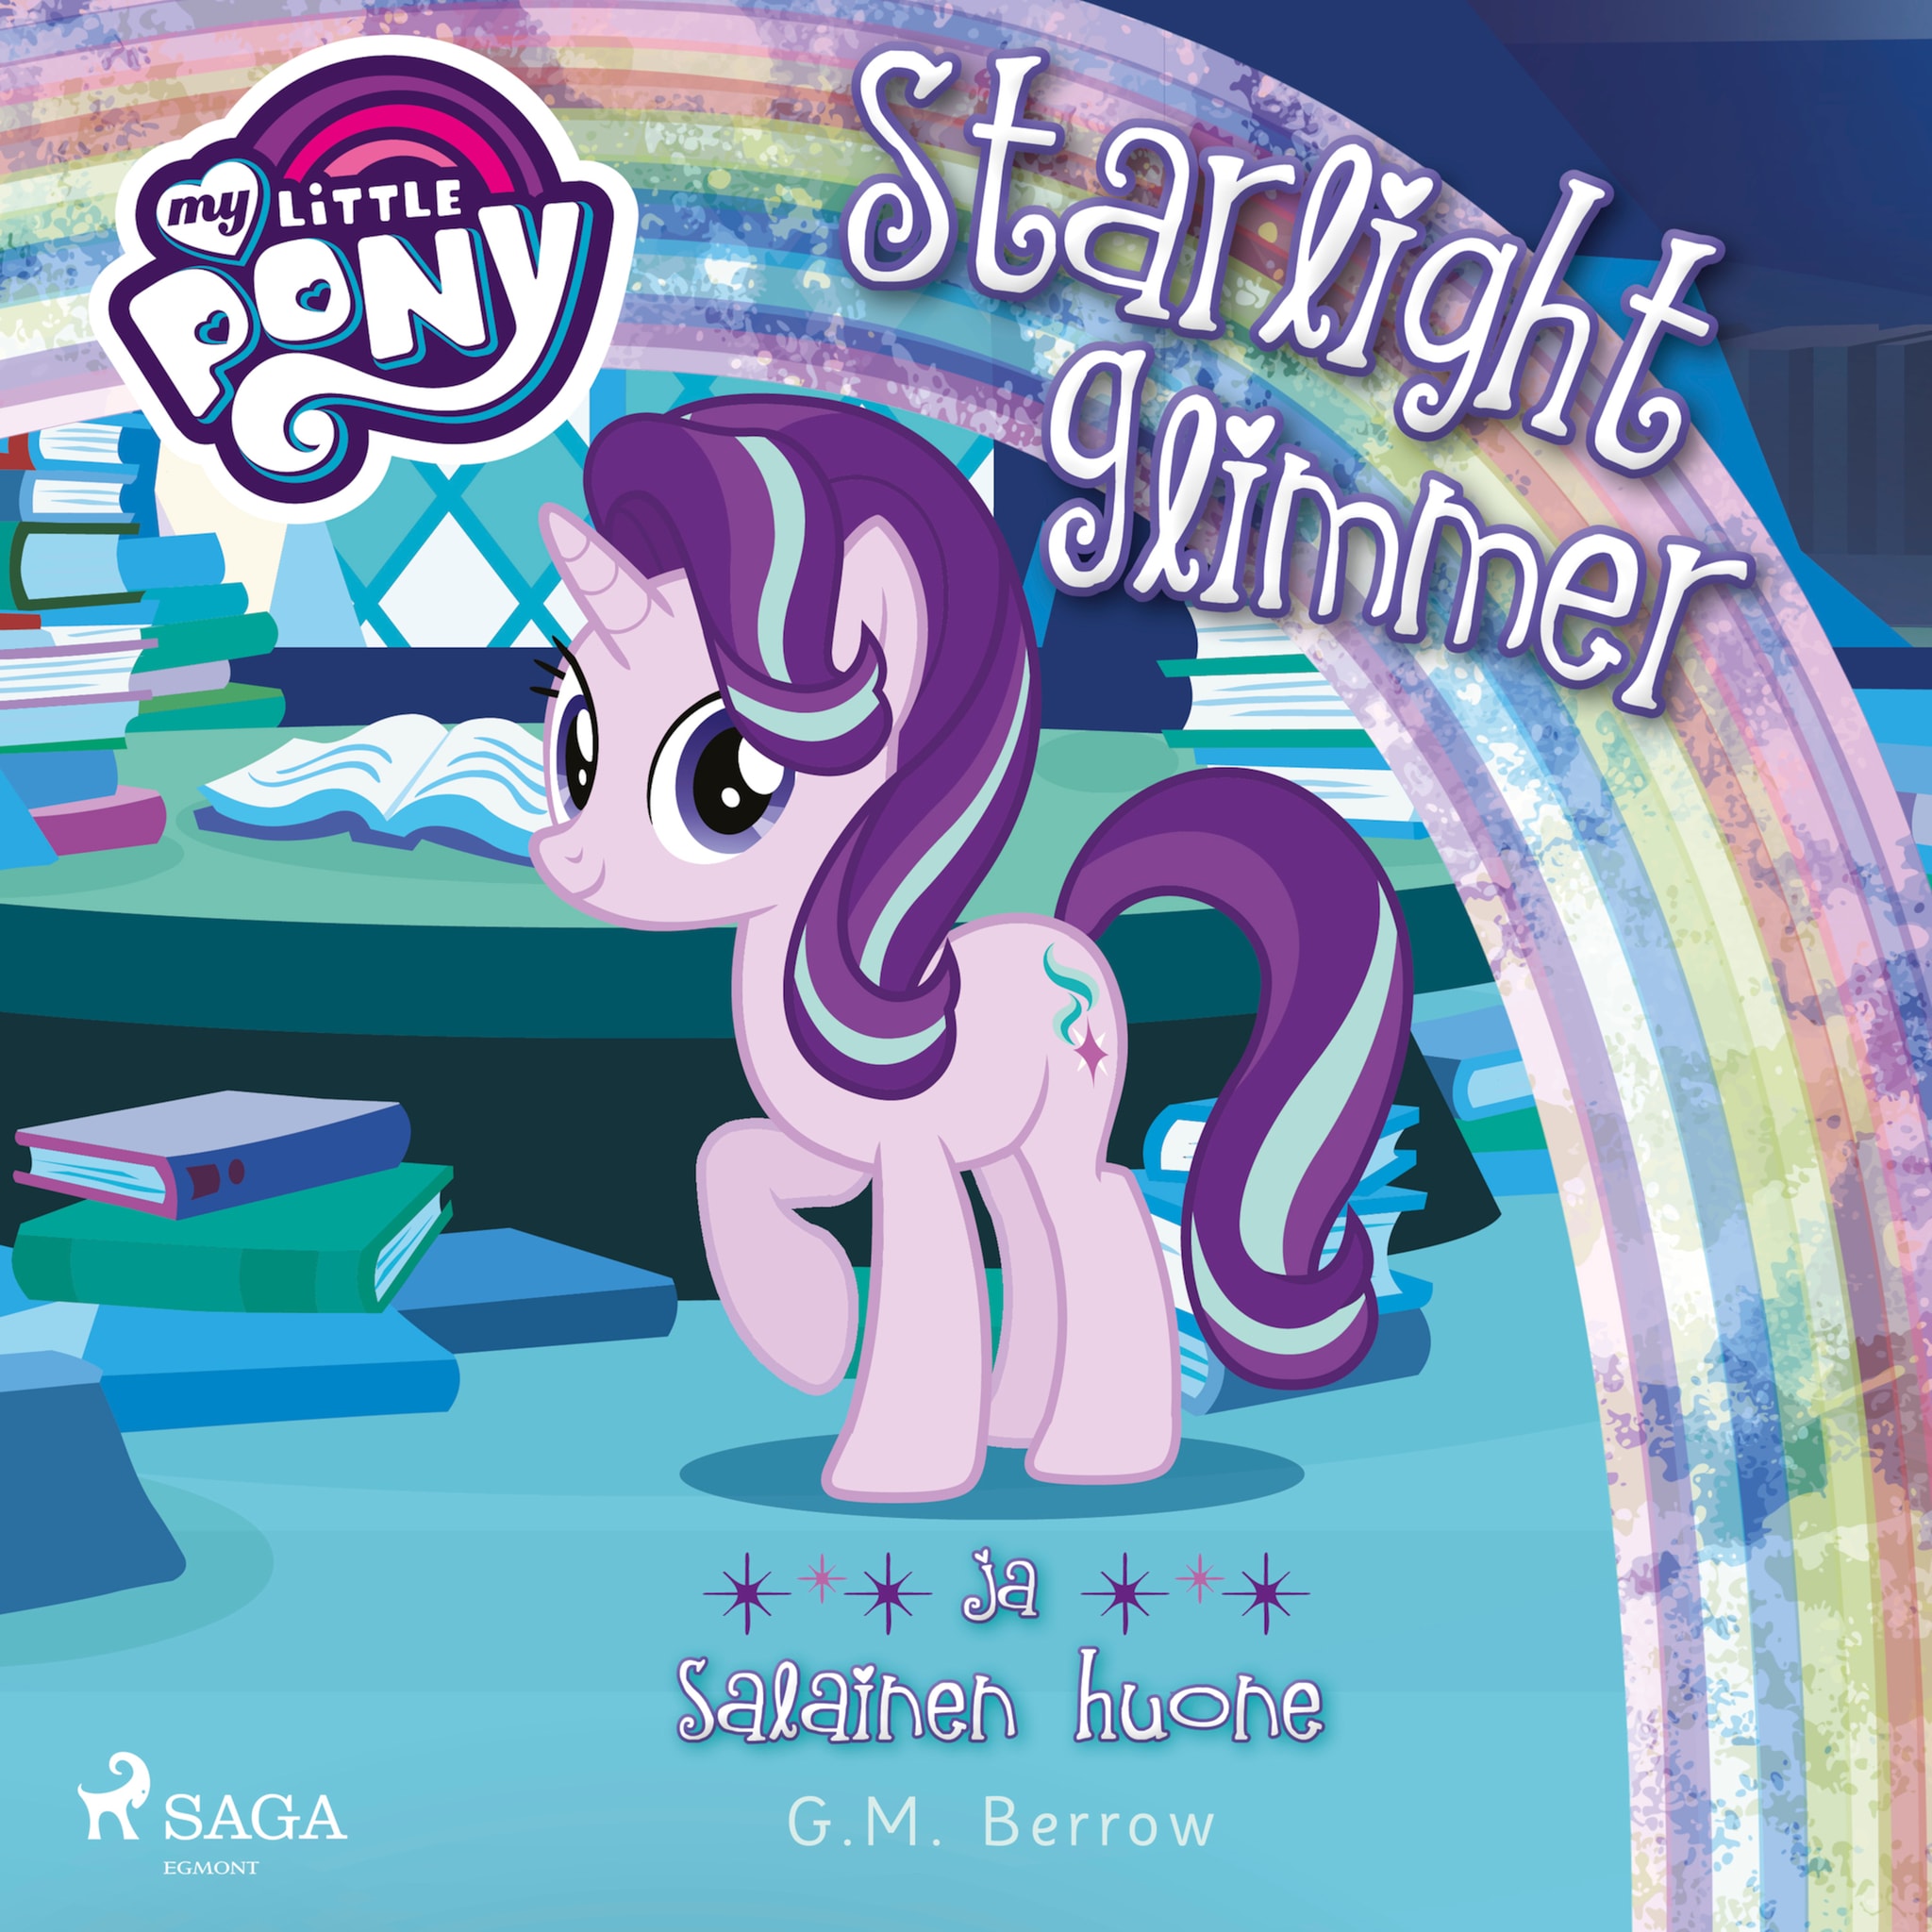 My Little Pony,Starlight Glimmer ja salainen huone ilmaiseksi